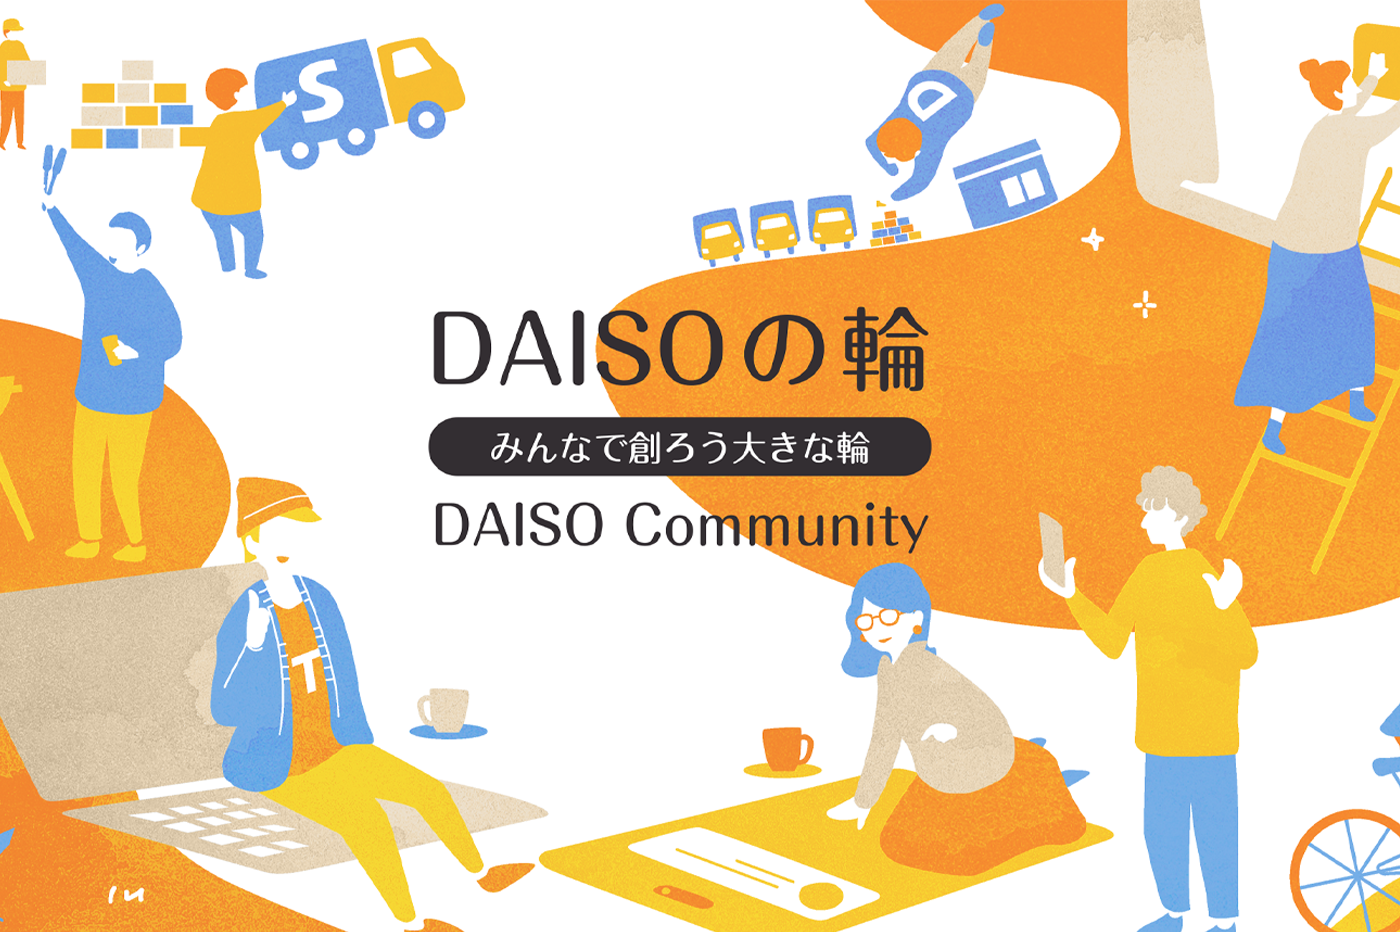 ファンコミュニティサイト「DAISOの輪」を12月1日開設